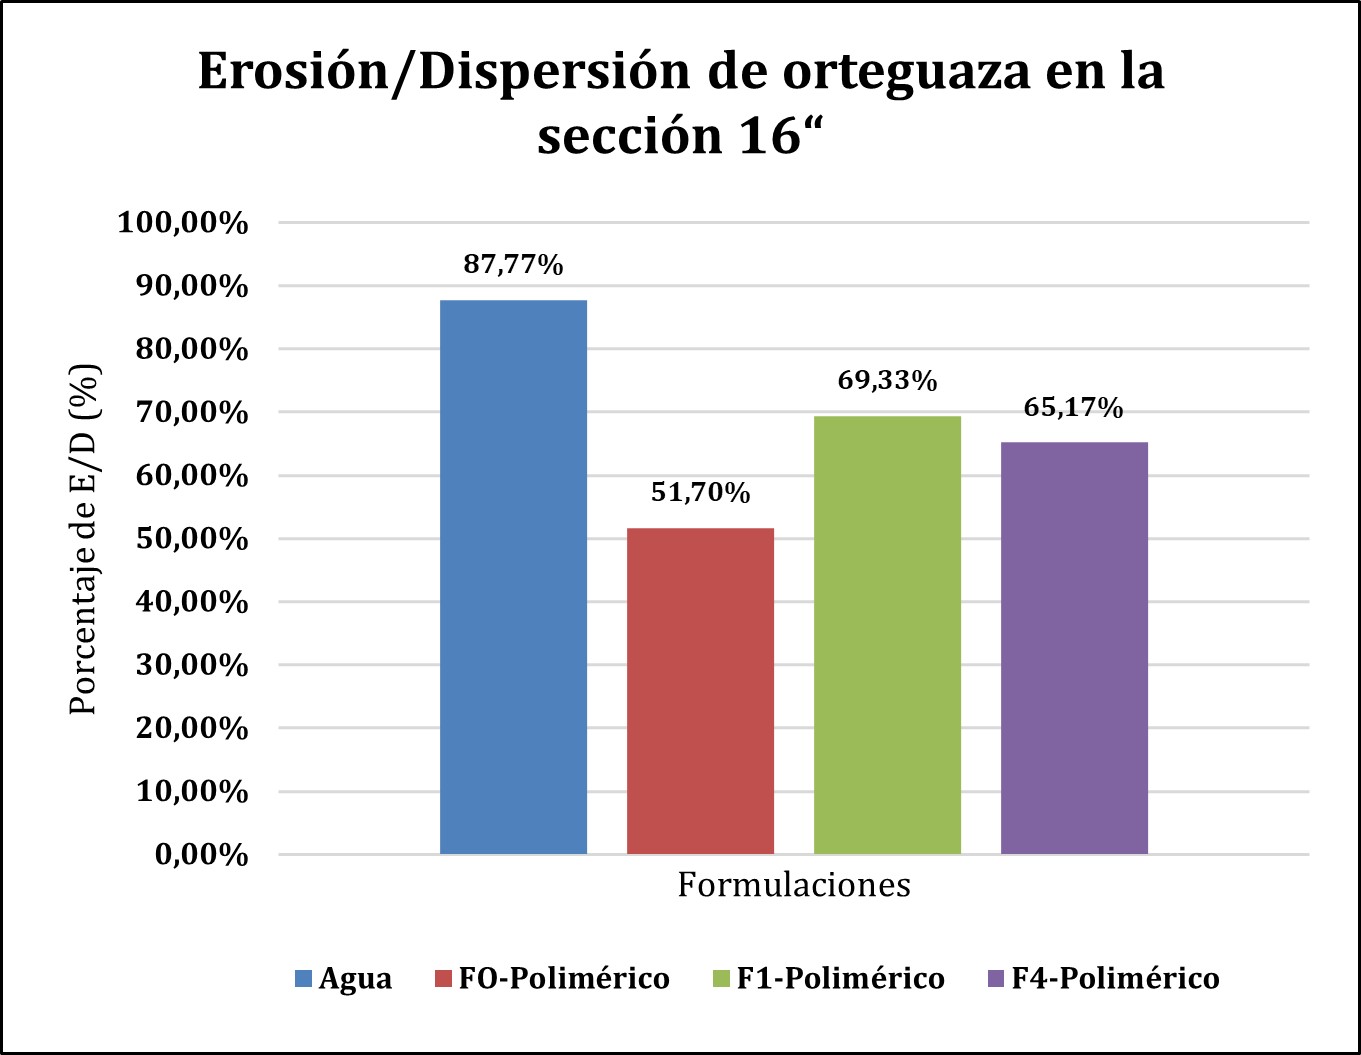 Erosión/Dispersión de Orteguaza
en la sección 16“